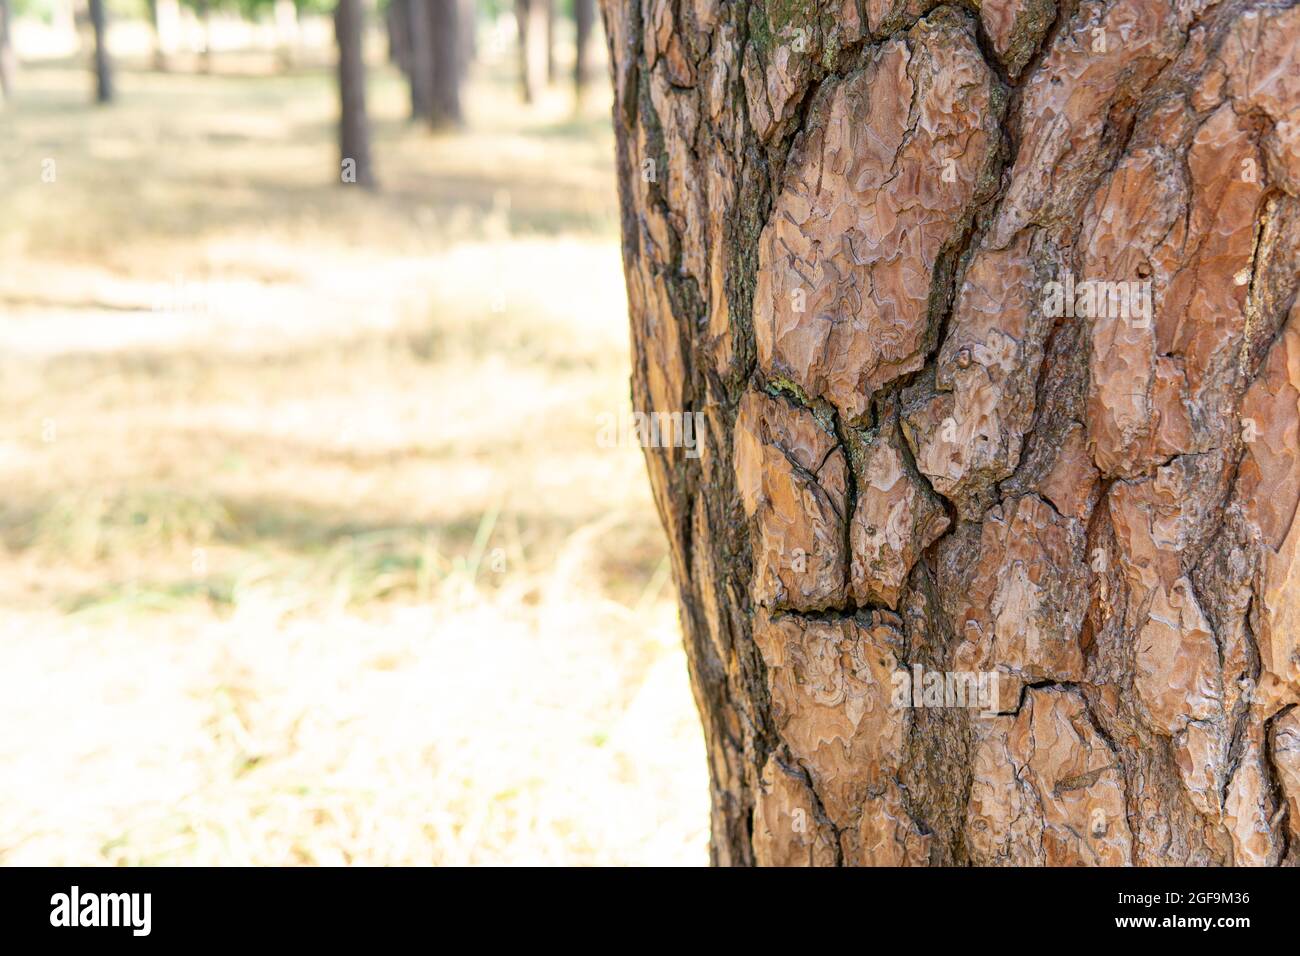 Vue rognée d'un tronc d'arbre avec un motif d'écorce ressemblant à un visage humain Banque D'Images